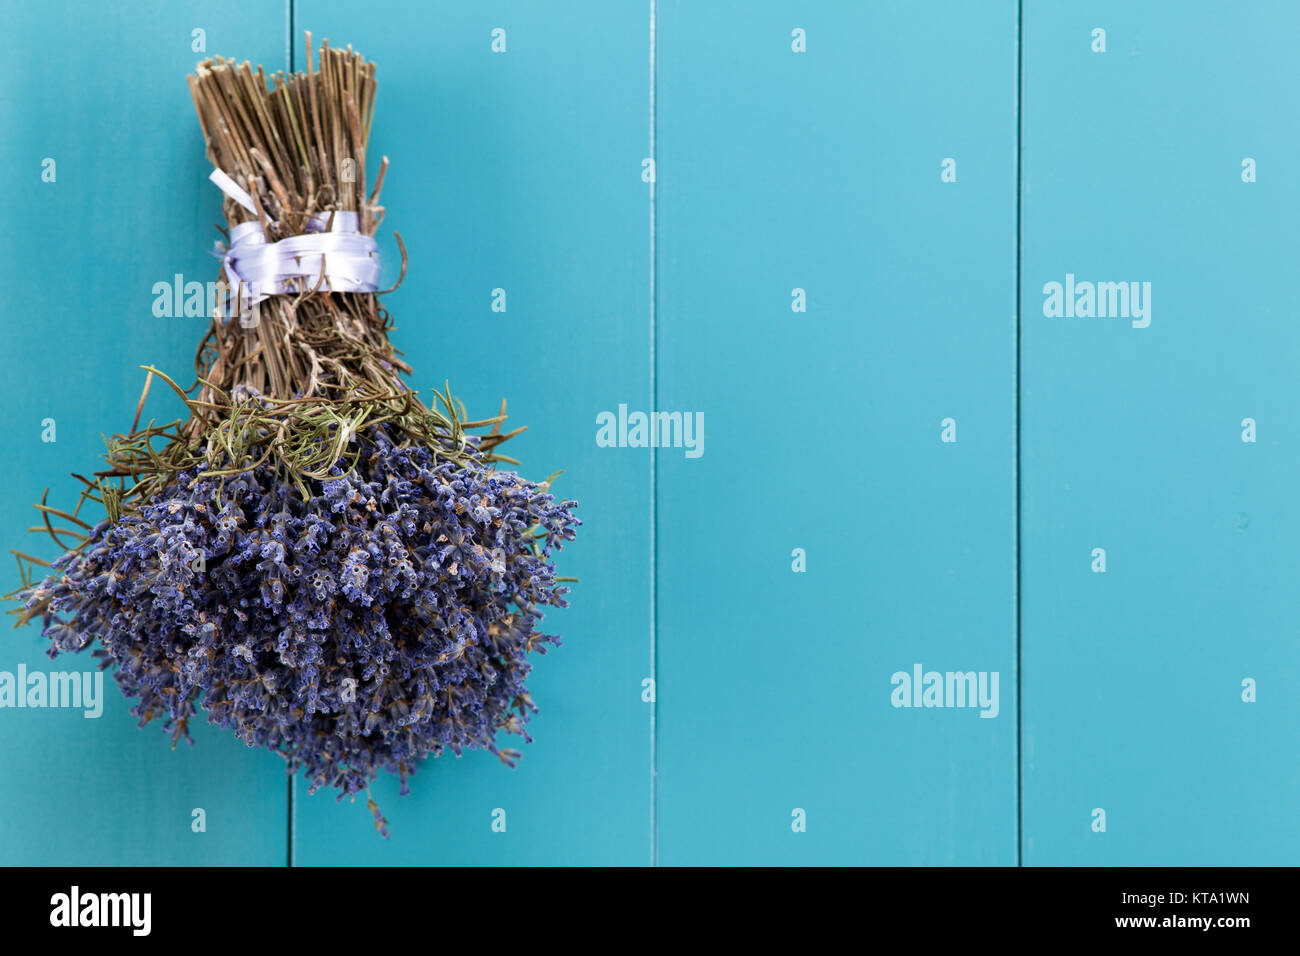 Ein Bündel Lavendel hängt zum Trocknen auf einer mediterranbllauen Holzwand Foto Stock